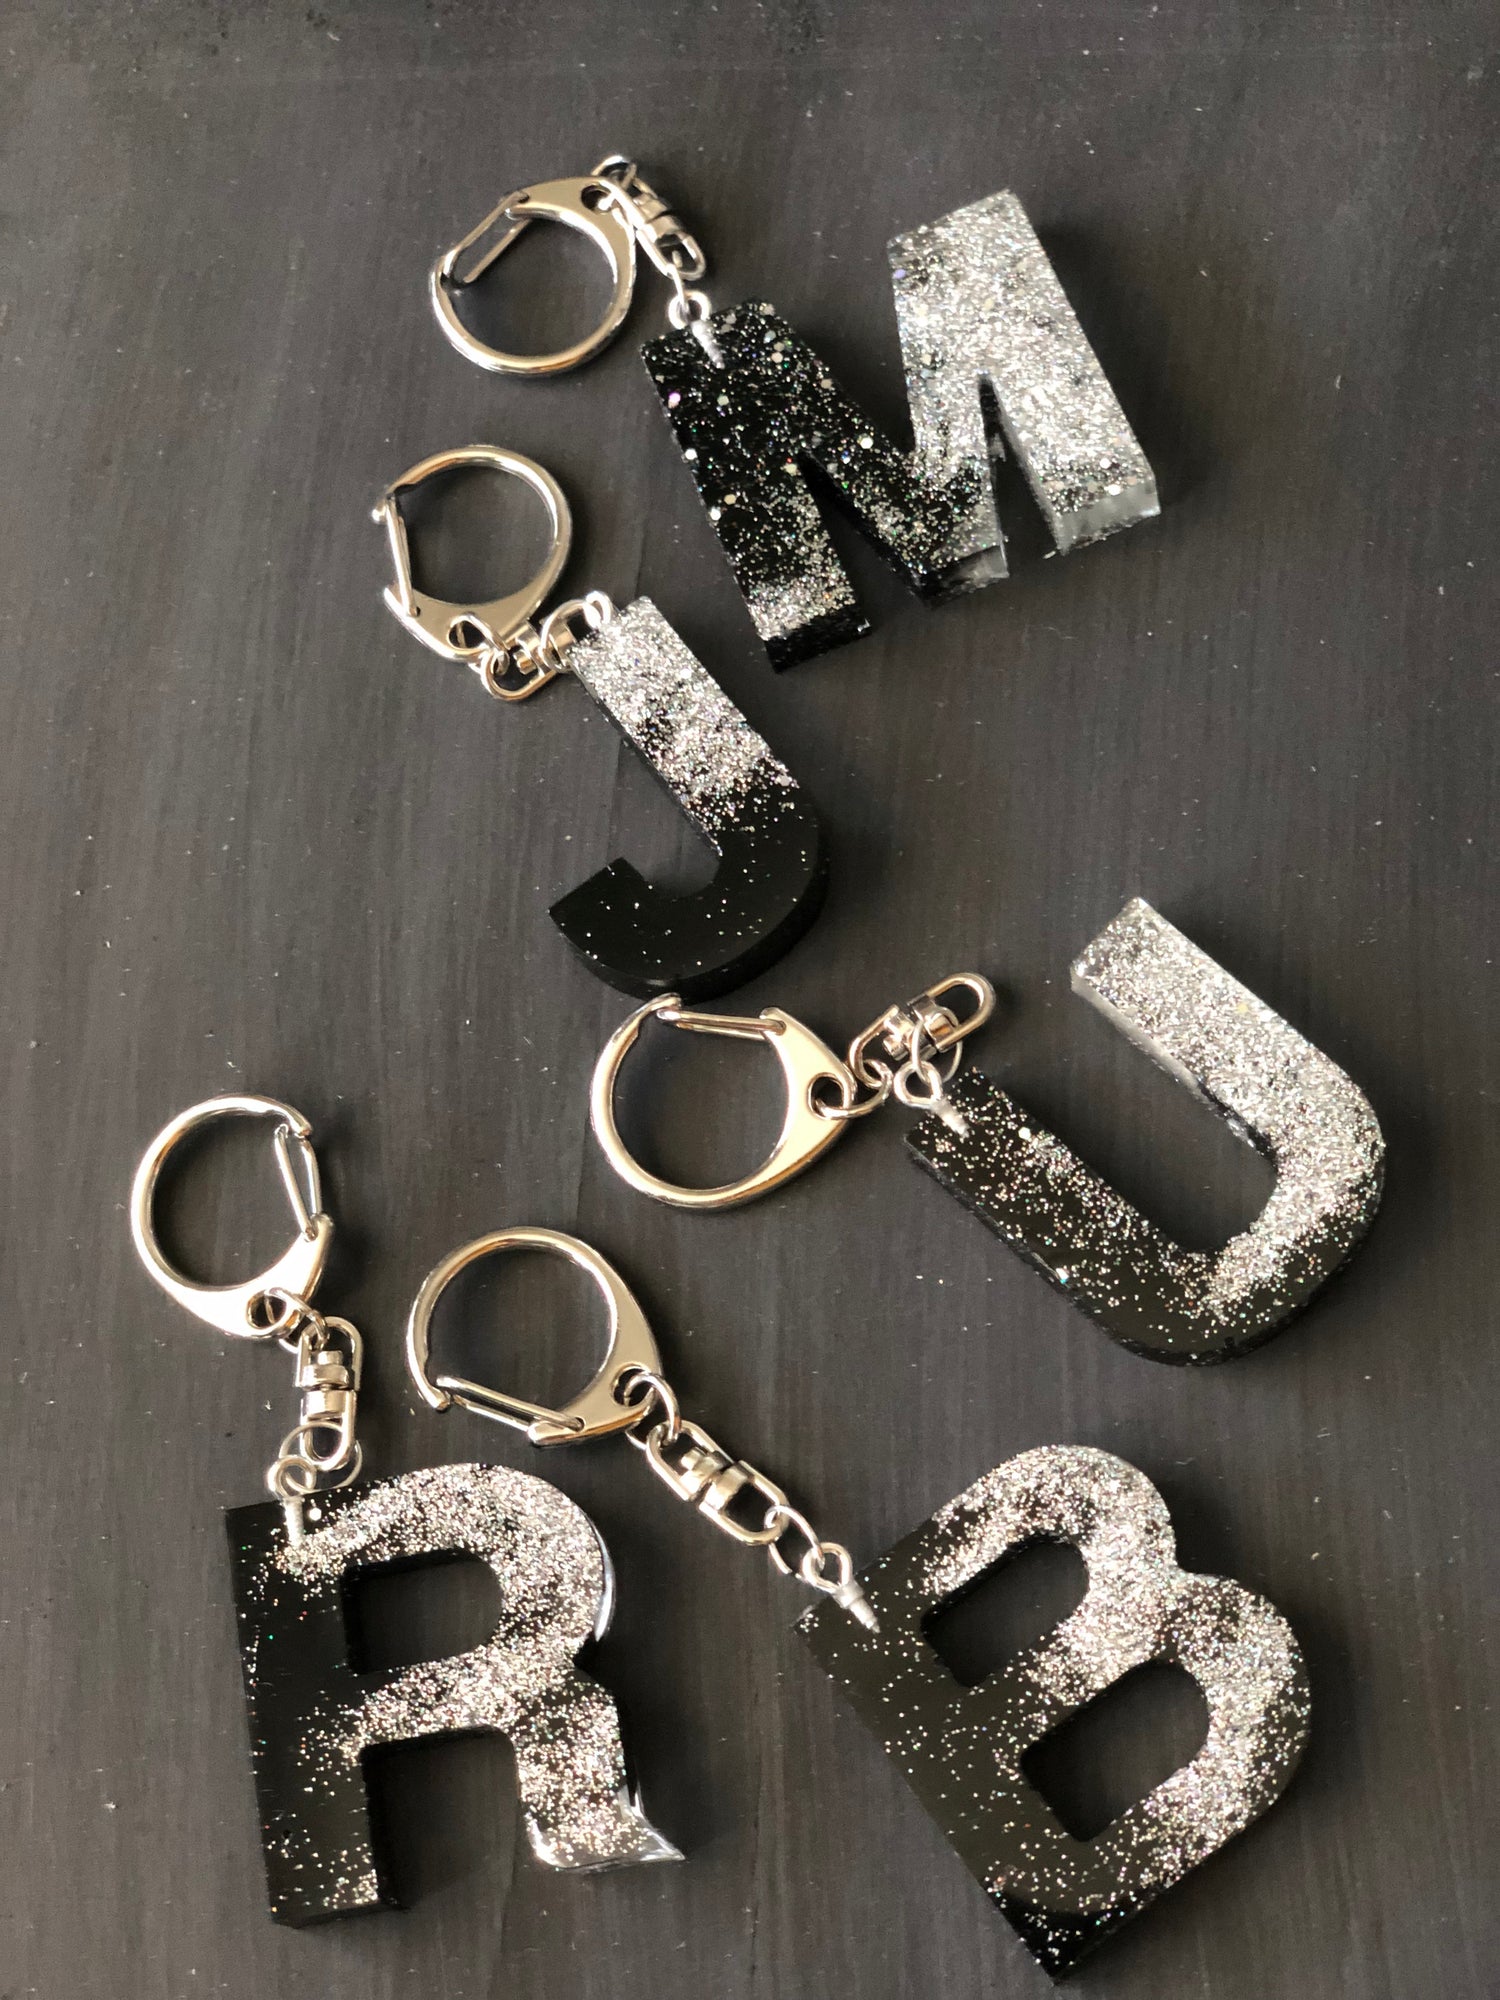 Alphabet Key Chain, Resin Keychain, Epoxy Key Ring